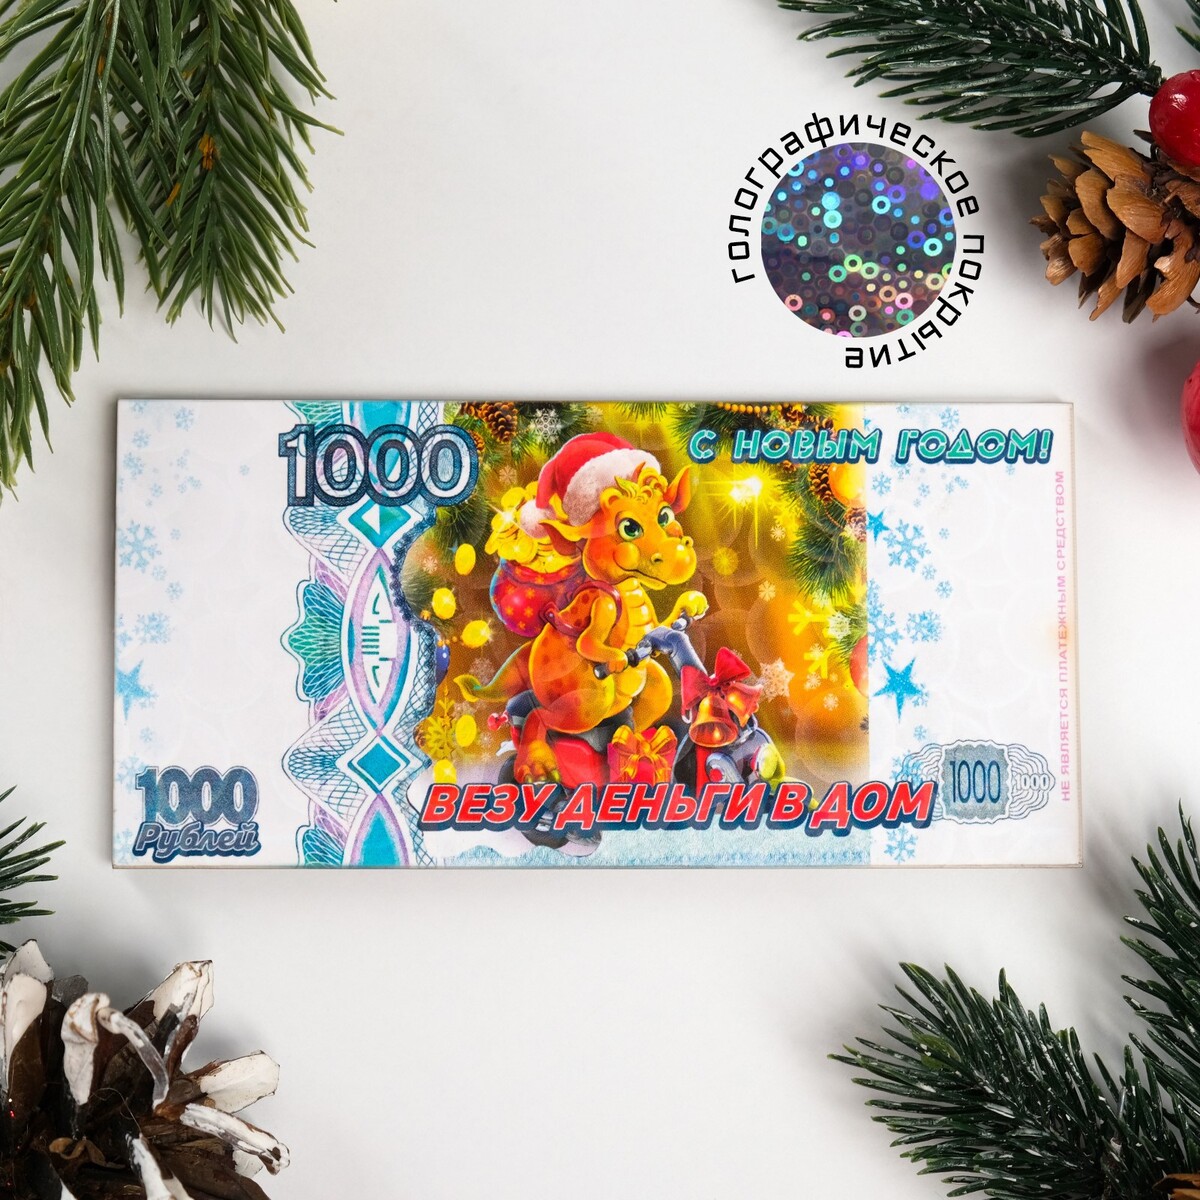 Магнит новогодний купюра Дарим Красиво 05582001: купить за 120 руб в  интернет магазине с бесплатной доставкой